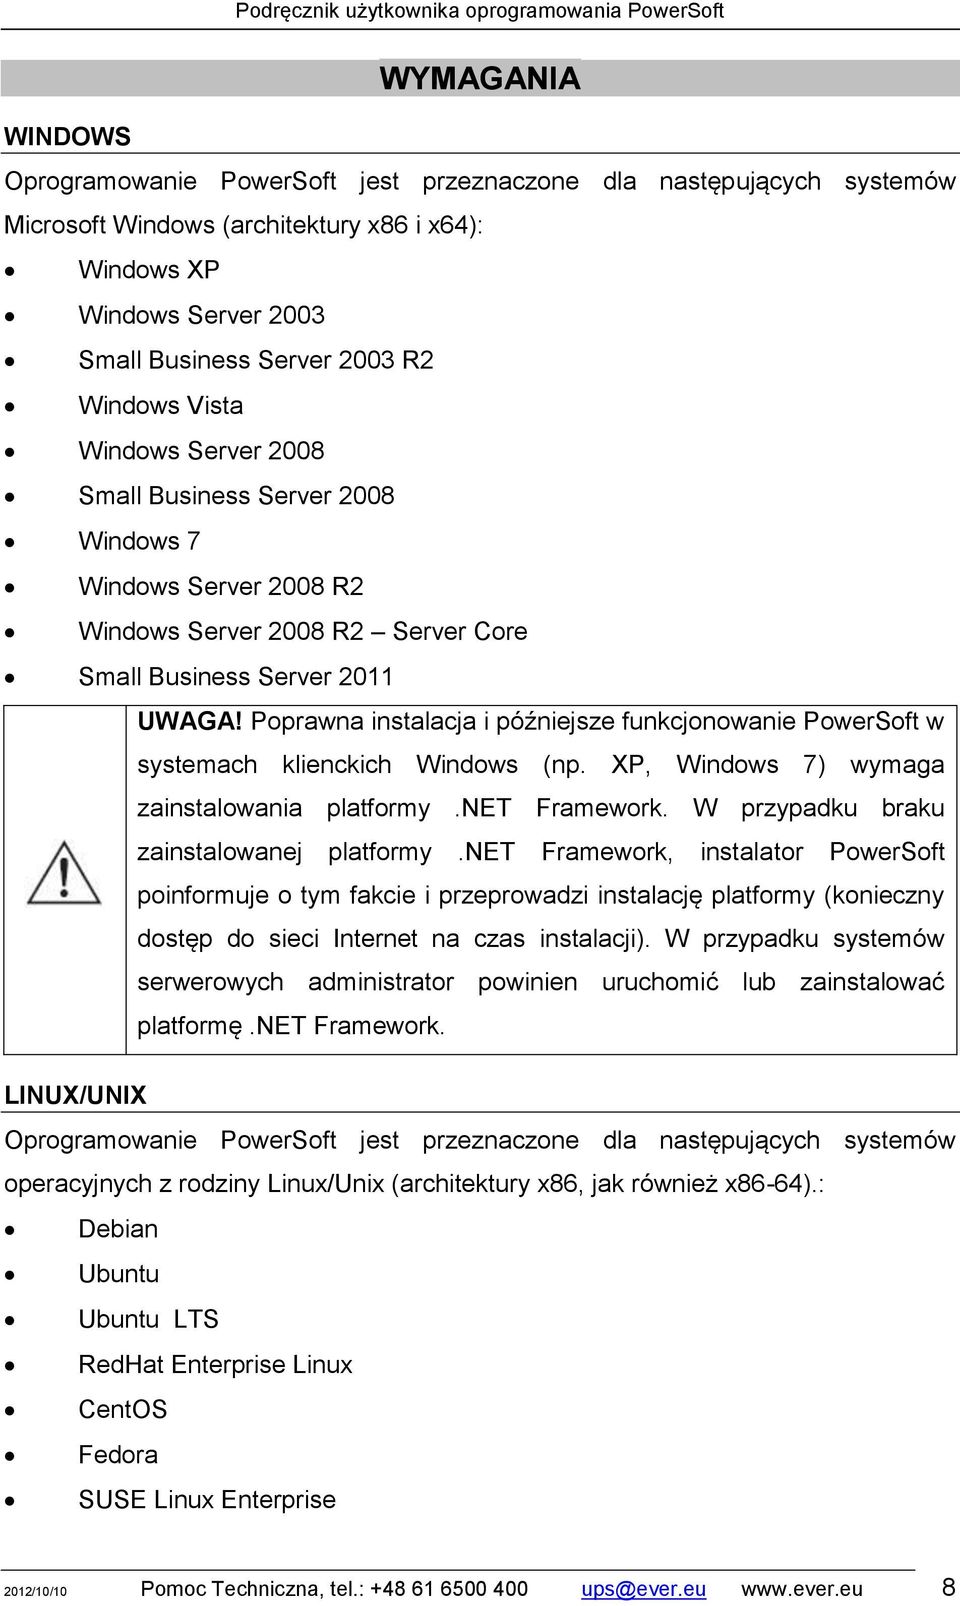 Poprawna instalacja i późniejsze funkcjonowanie PowerSoft w systemach klienckich Windows (np. XP, Windows 7) wymaga zainstalowania platformy.net Framework. W przypadku braku zainstalowanej platformy.